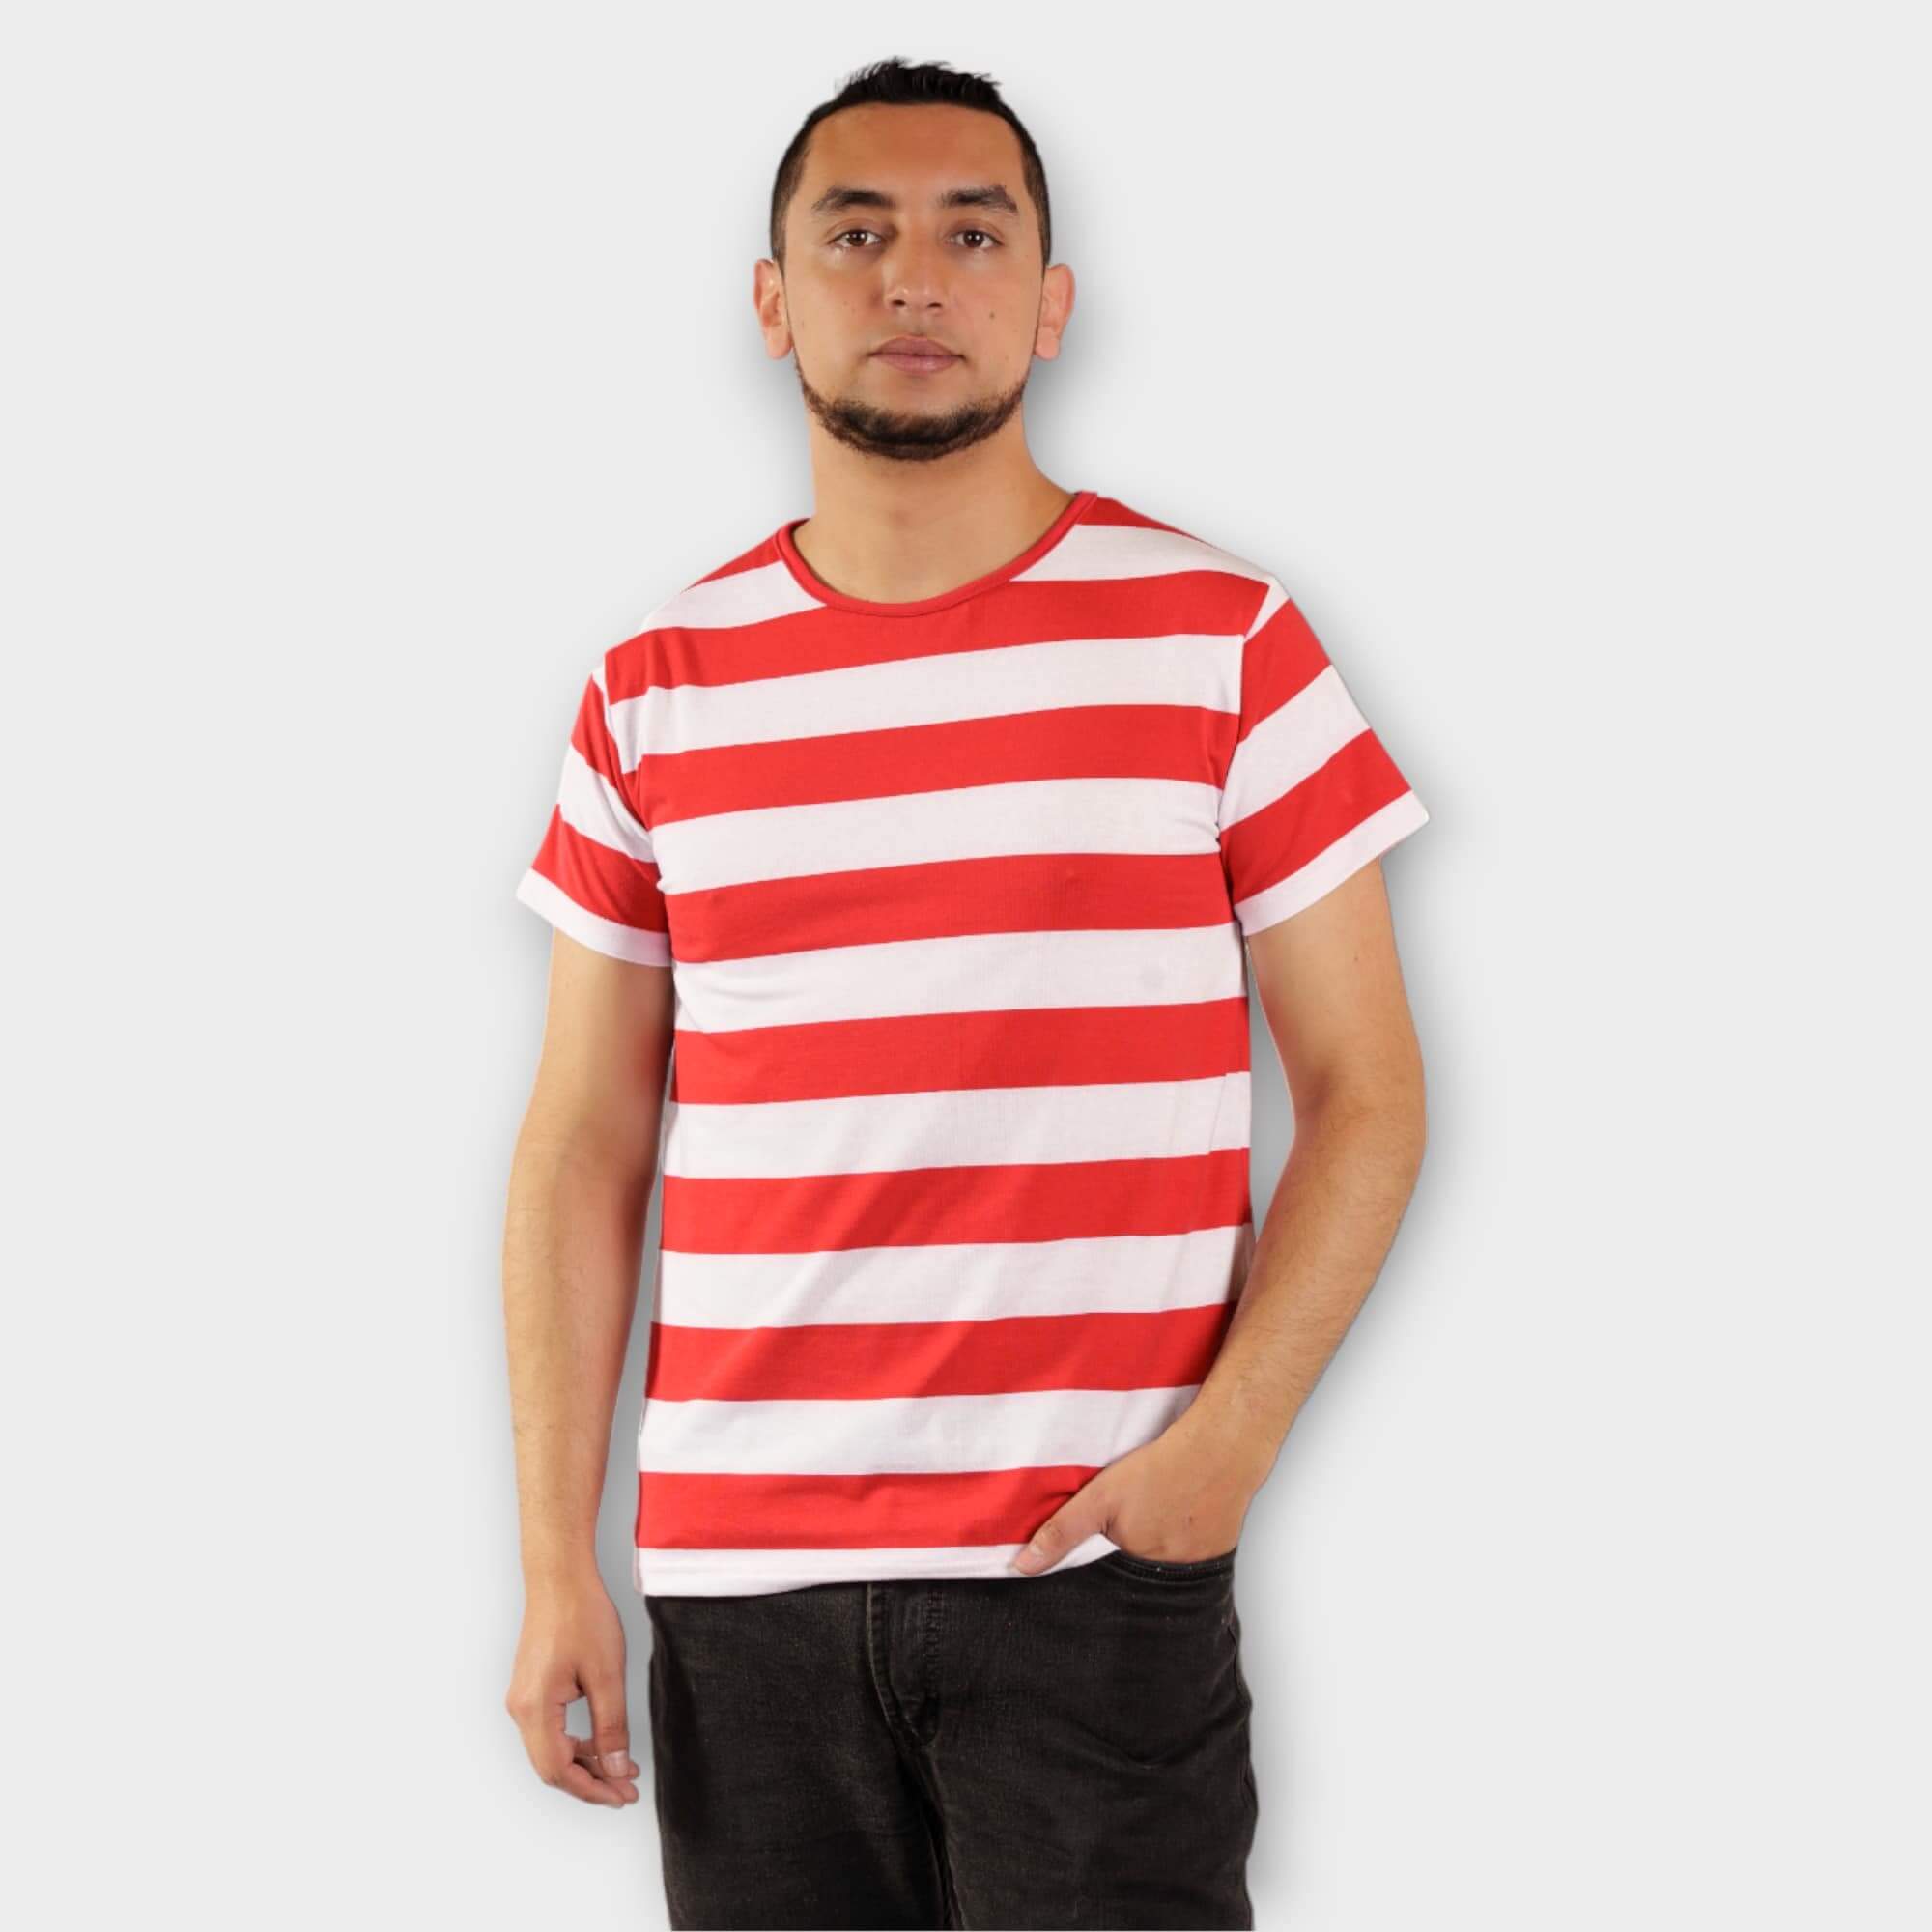 Camiseta de rayas rojas y blancas: estilo clásico – Derayas.jpg